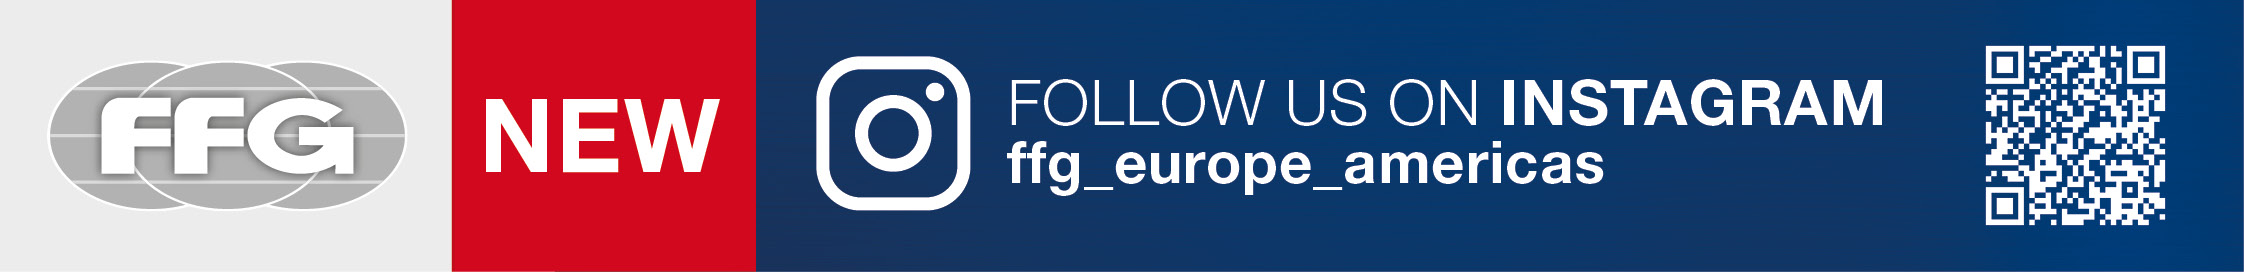 FFG Instagram banner